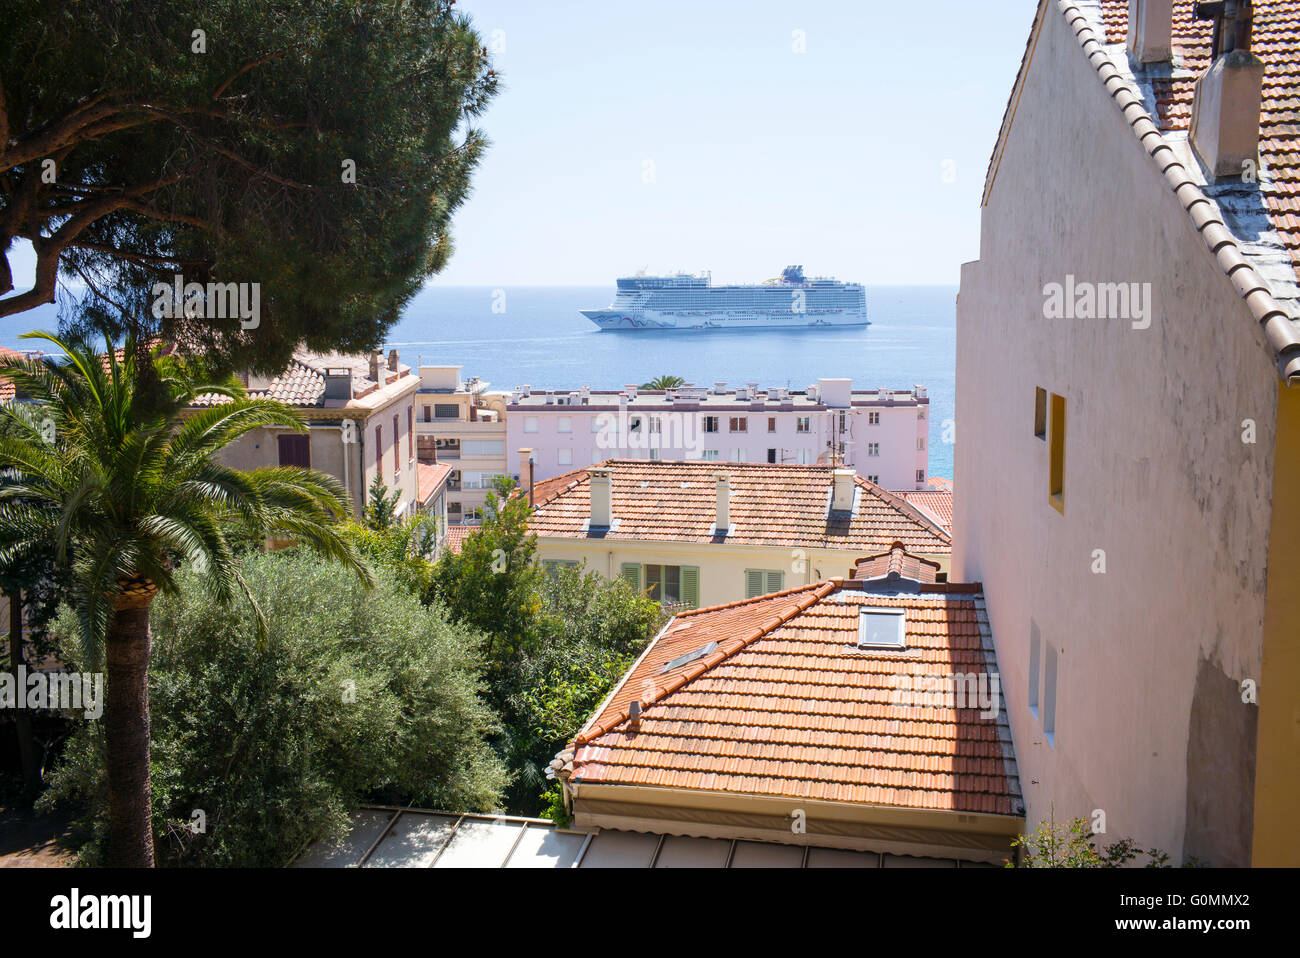 Ein Kreuzfahrtschiff in Cannes, Frankreich, gesehen durch Gebäude in der Altstadt Le Suquet festgemacht. Stockfoto